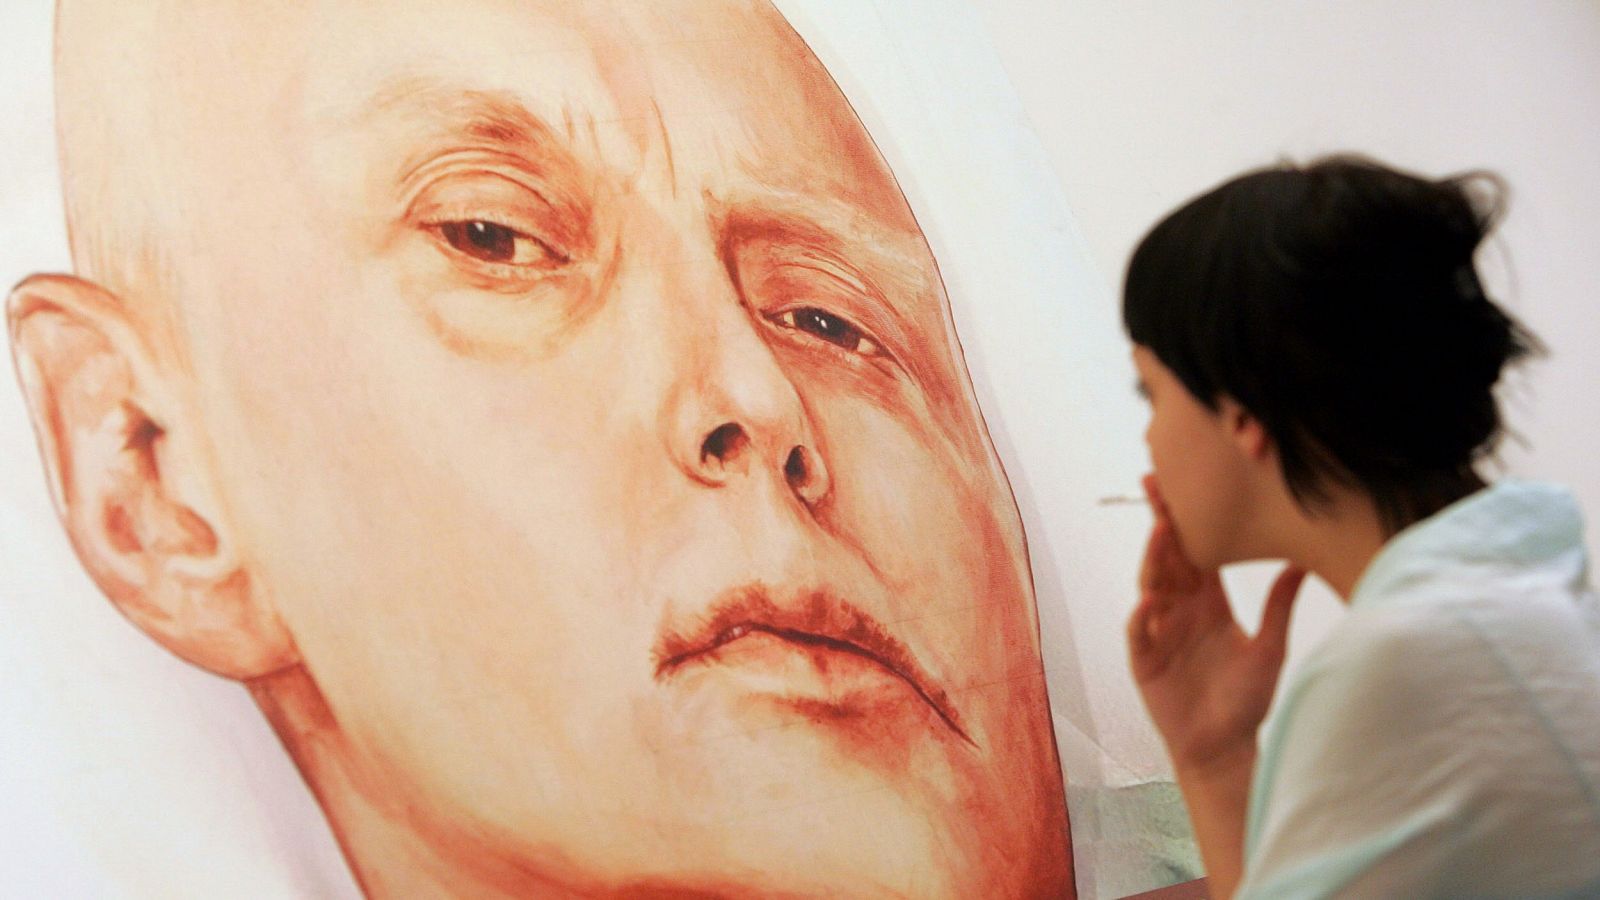 Imagen de archivo tomada en 2007 que muestra a un visitante mira una pintura del espía ruso Alexander Litvinenko en la galería Marat Guelman gallery de Moscú.